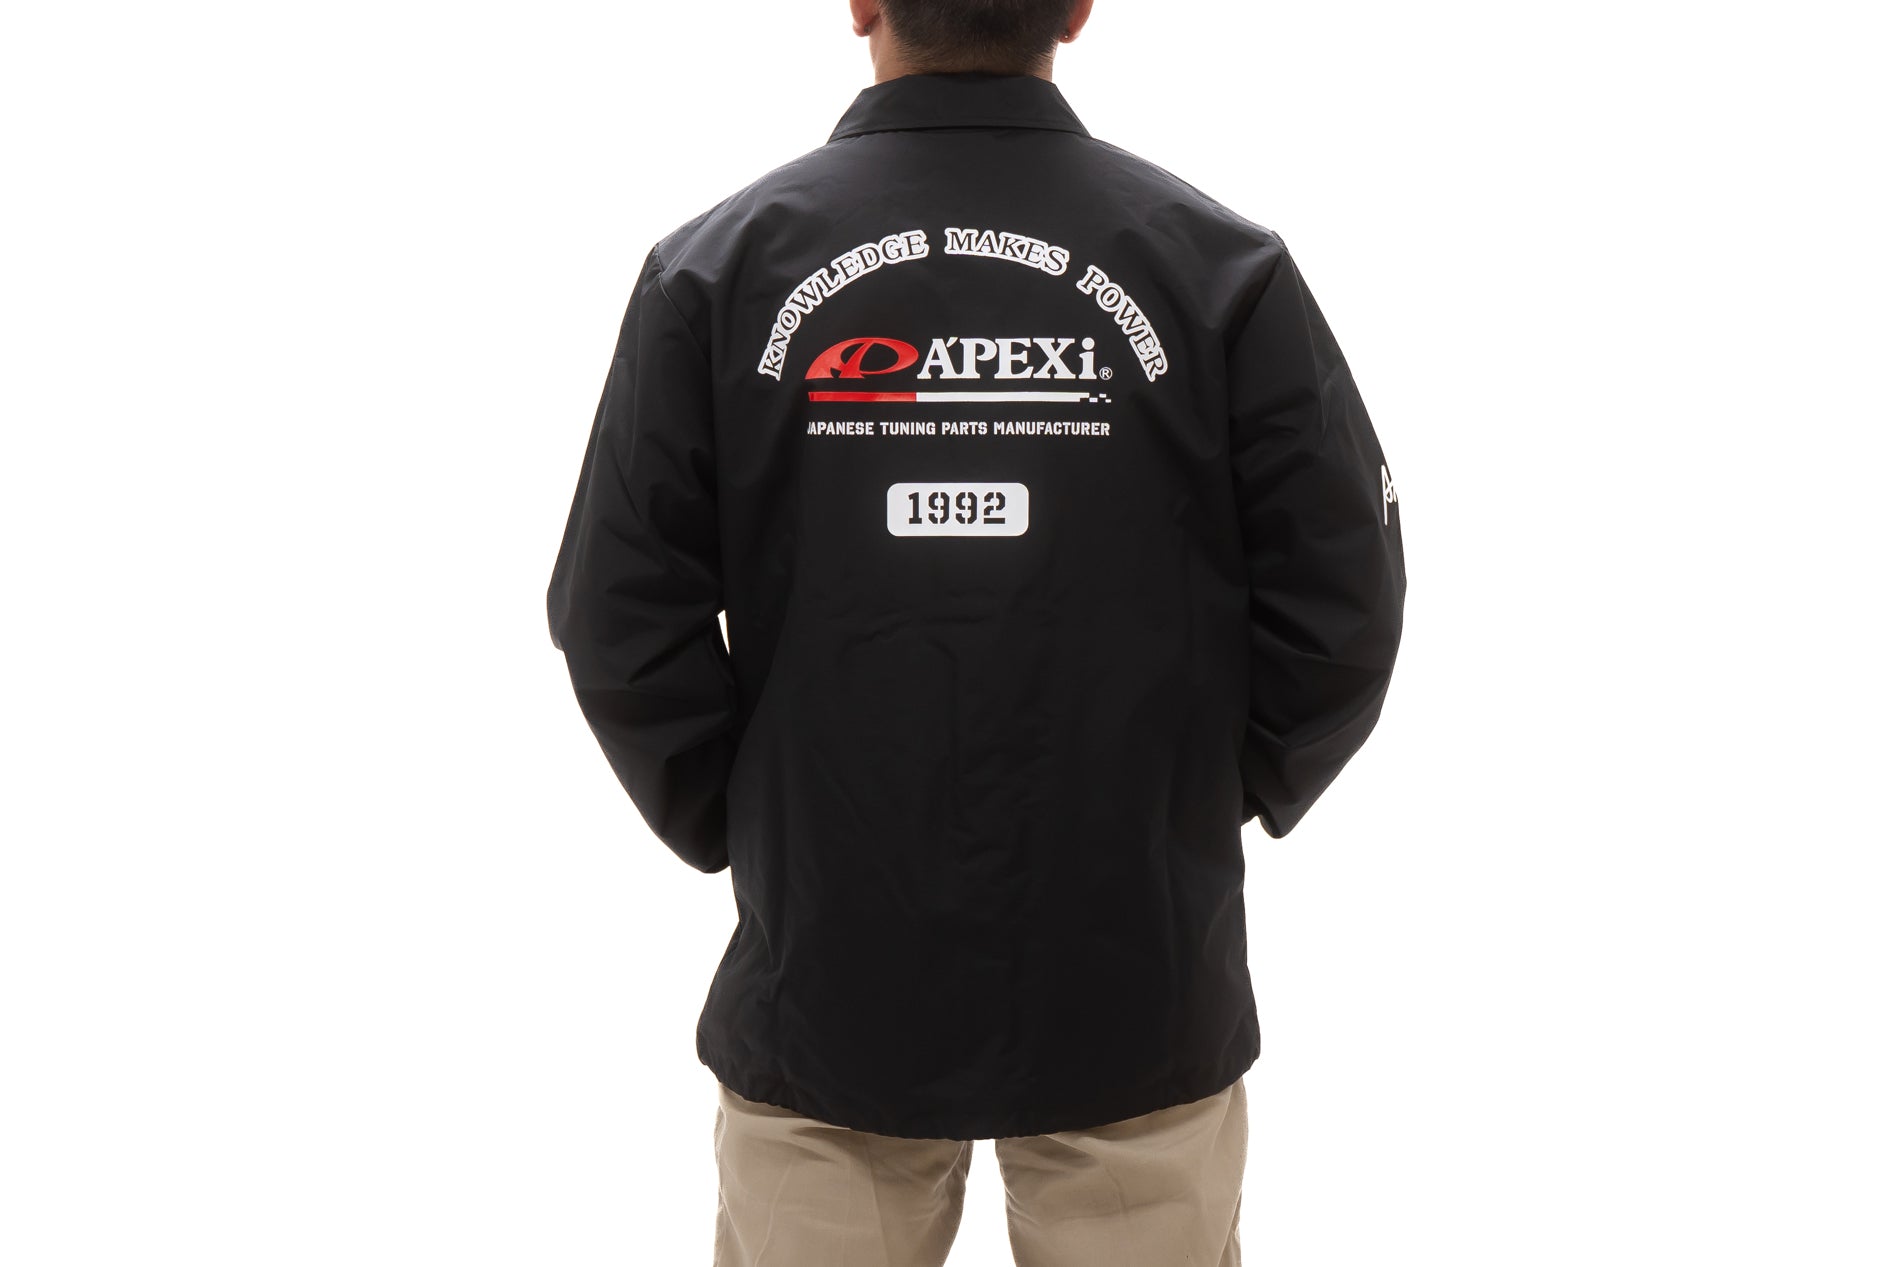 A'PEXi - A'PEXi OG Coaches Jacket